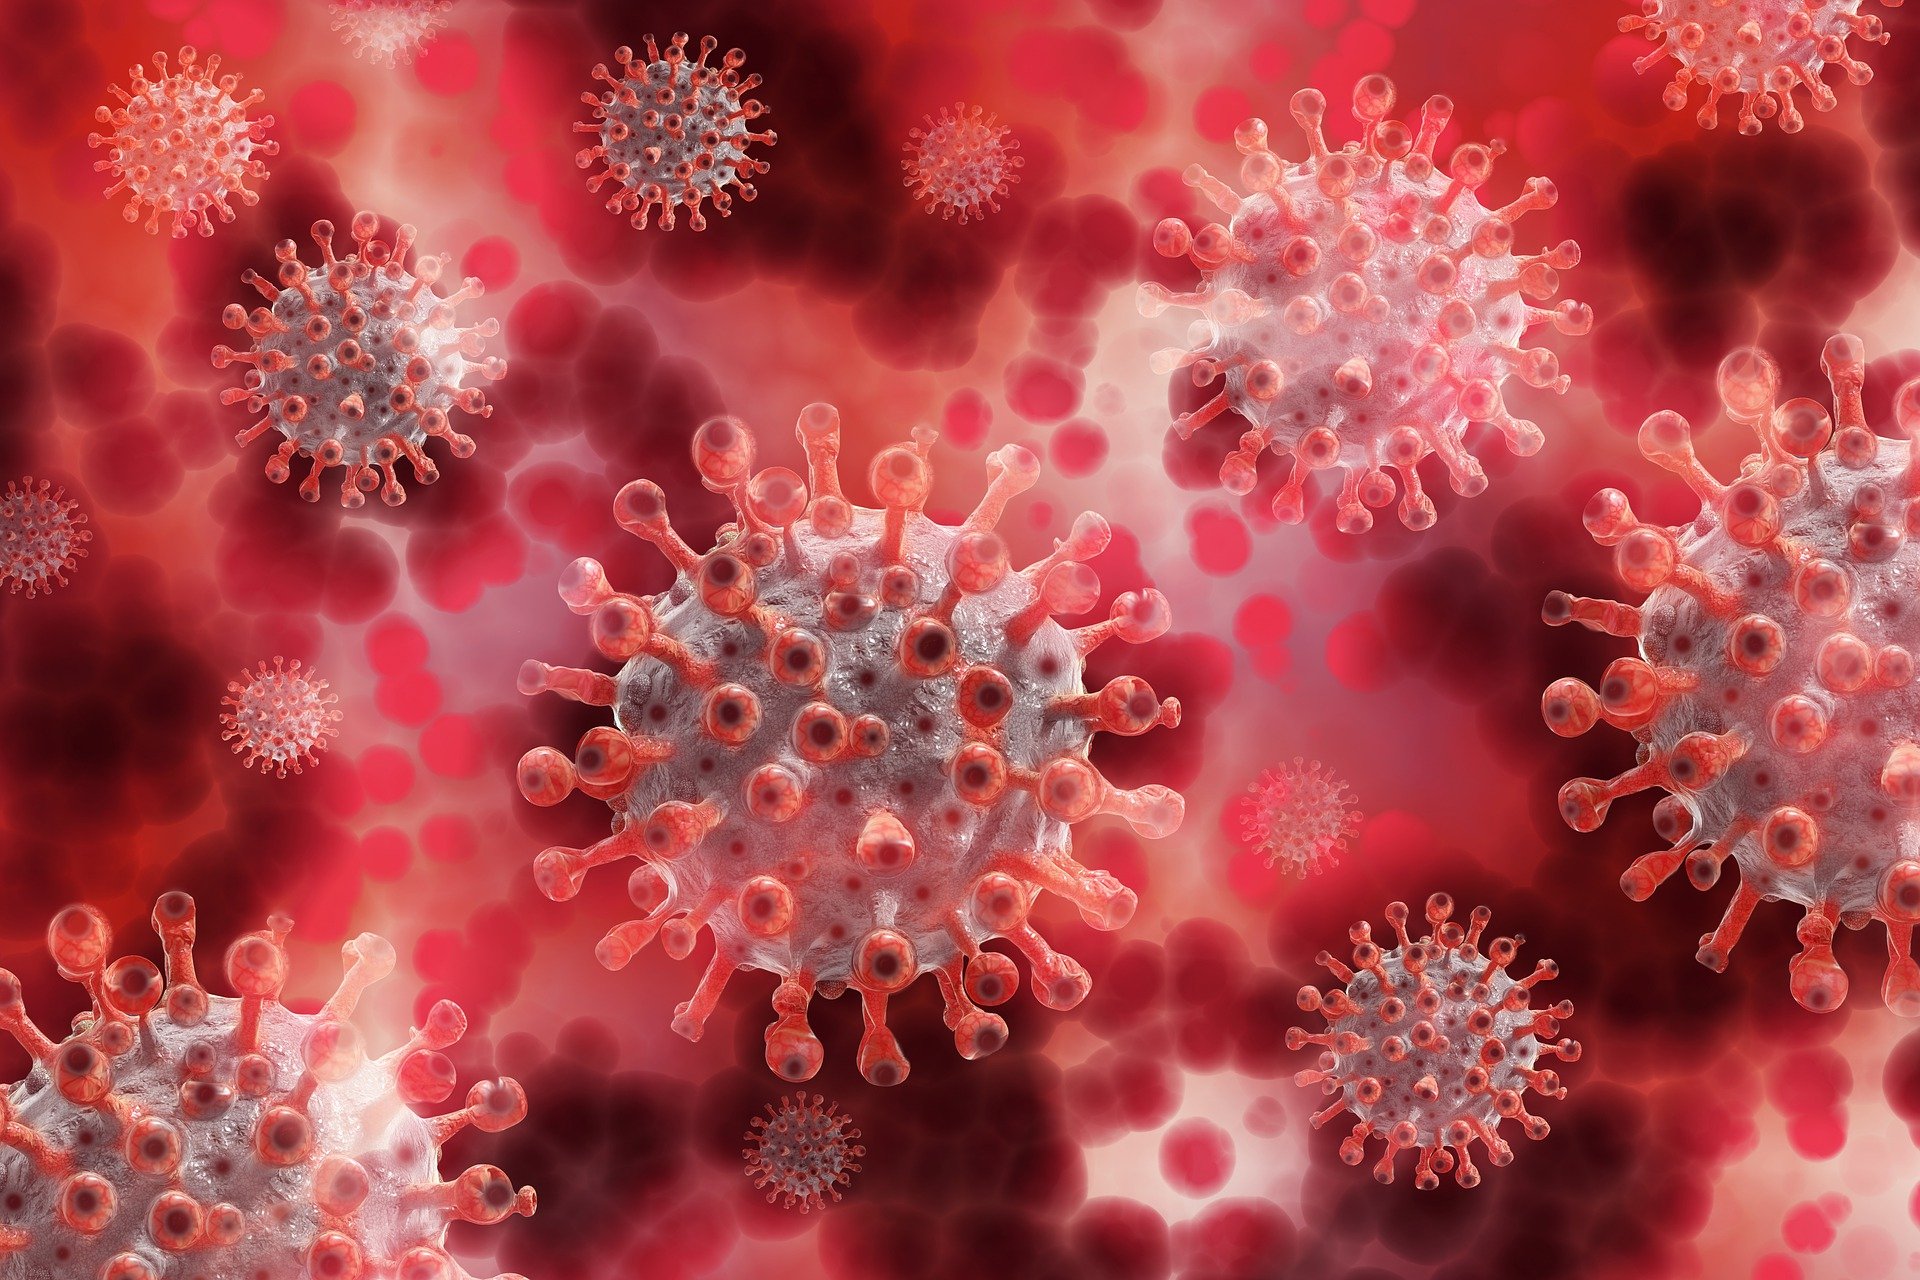 Actualización Epidemiológica: Enfermedad por coronavirus (COVID-19)